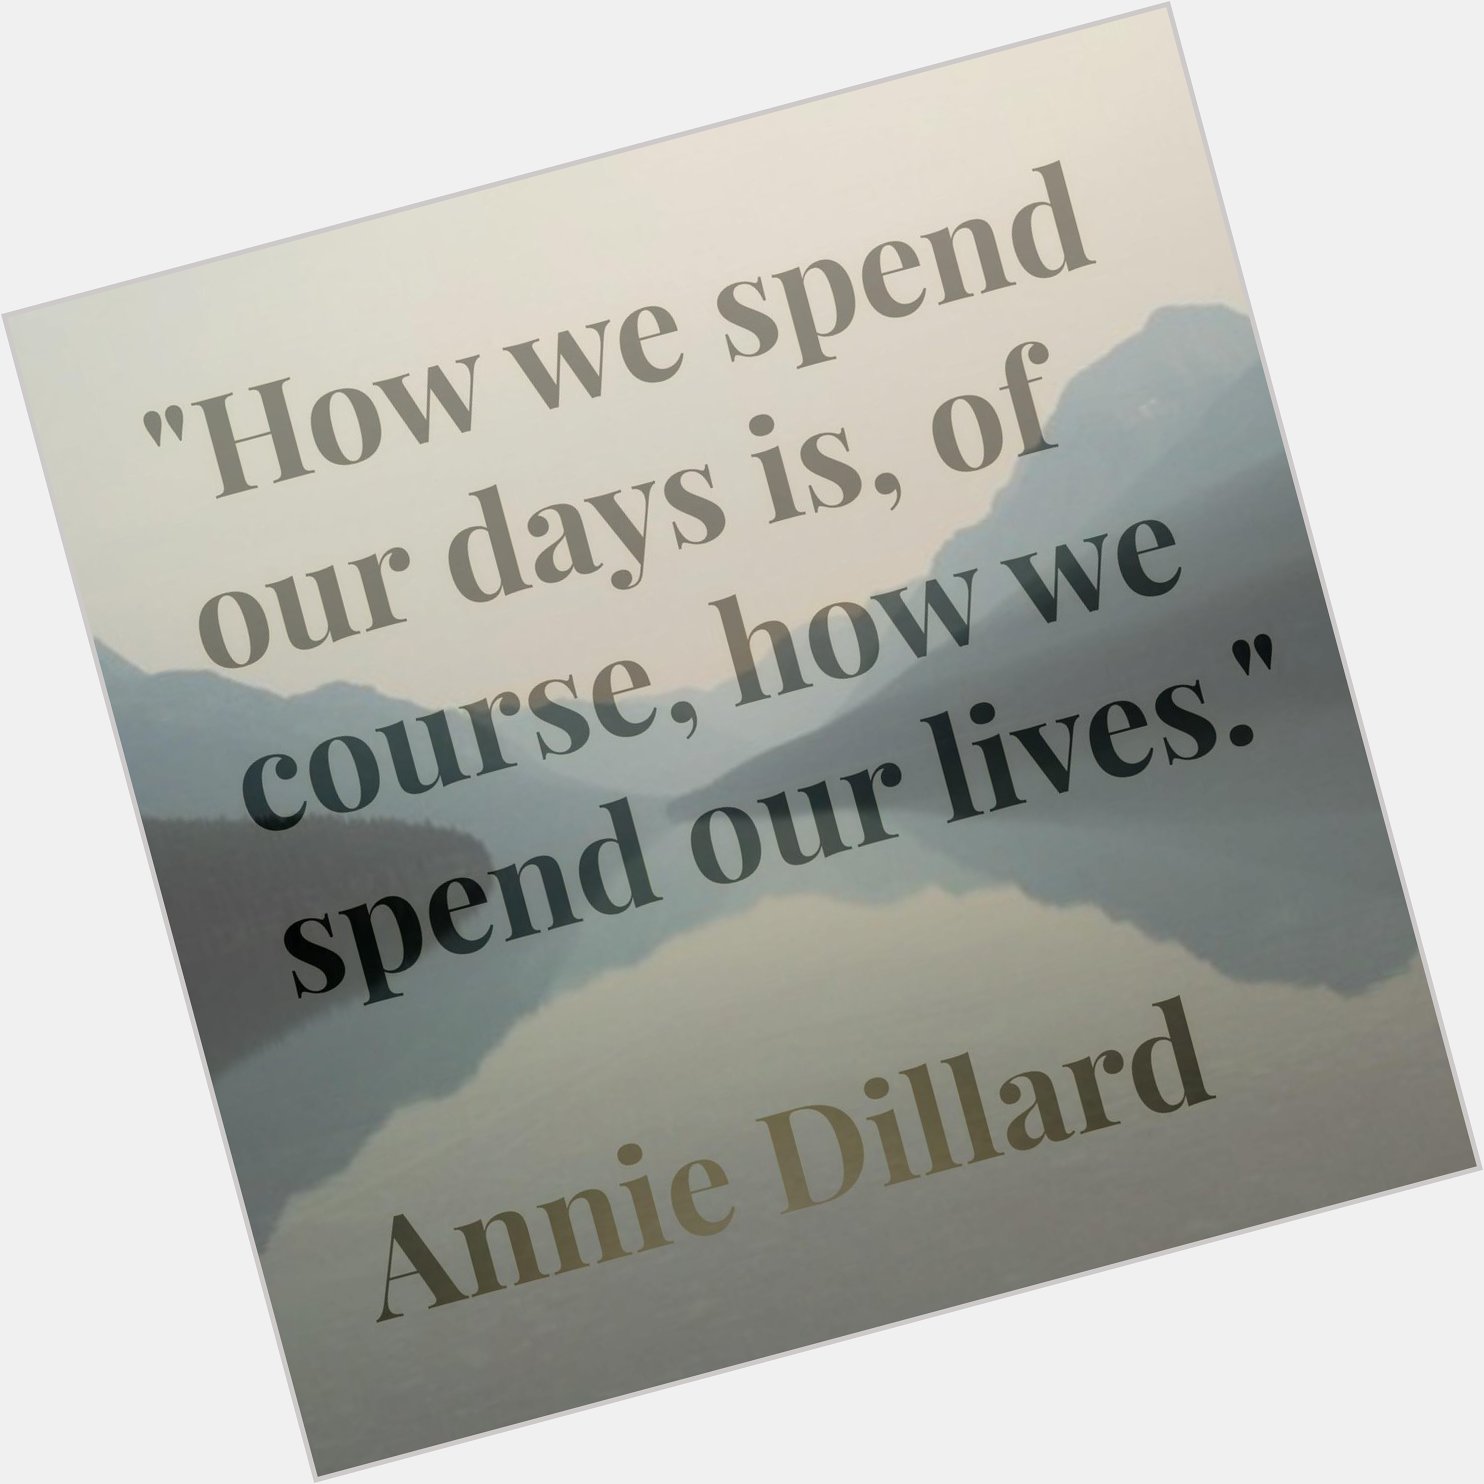 Happy Birthday to Annie Dillard - an alchemist of words  